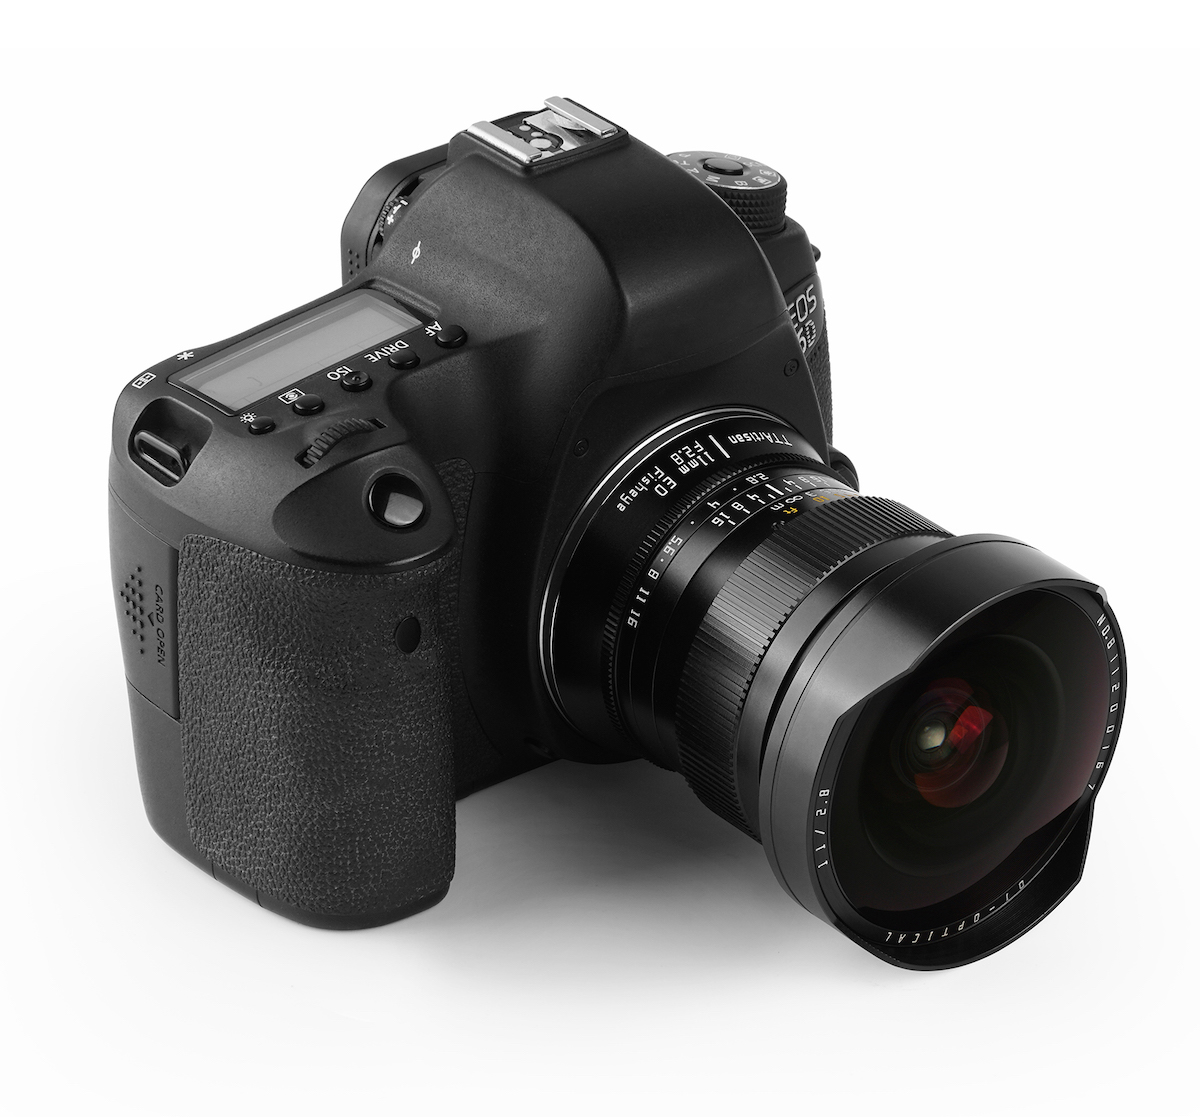 Surprise! New DSLR lens announced: TTArtisan 11mm f/2.8 ED full